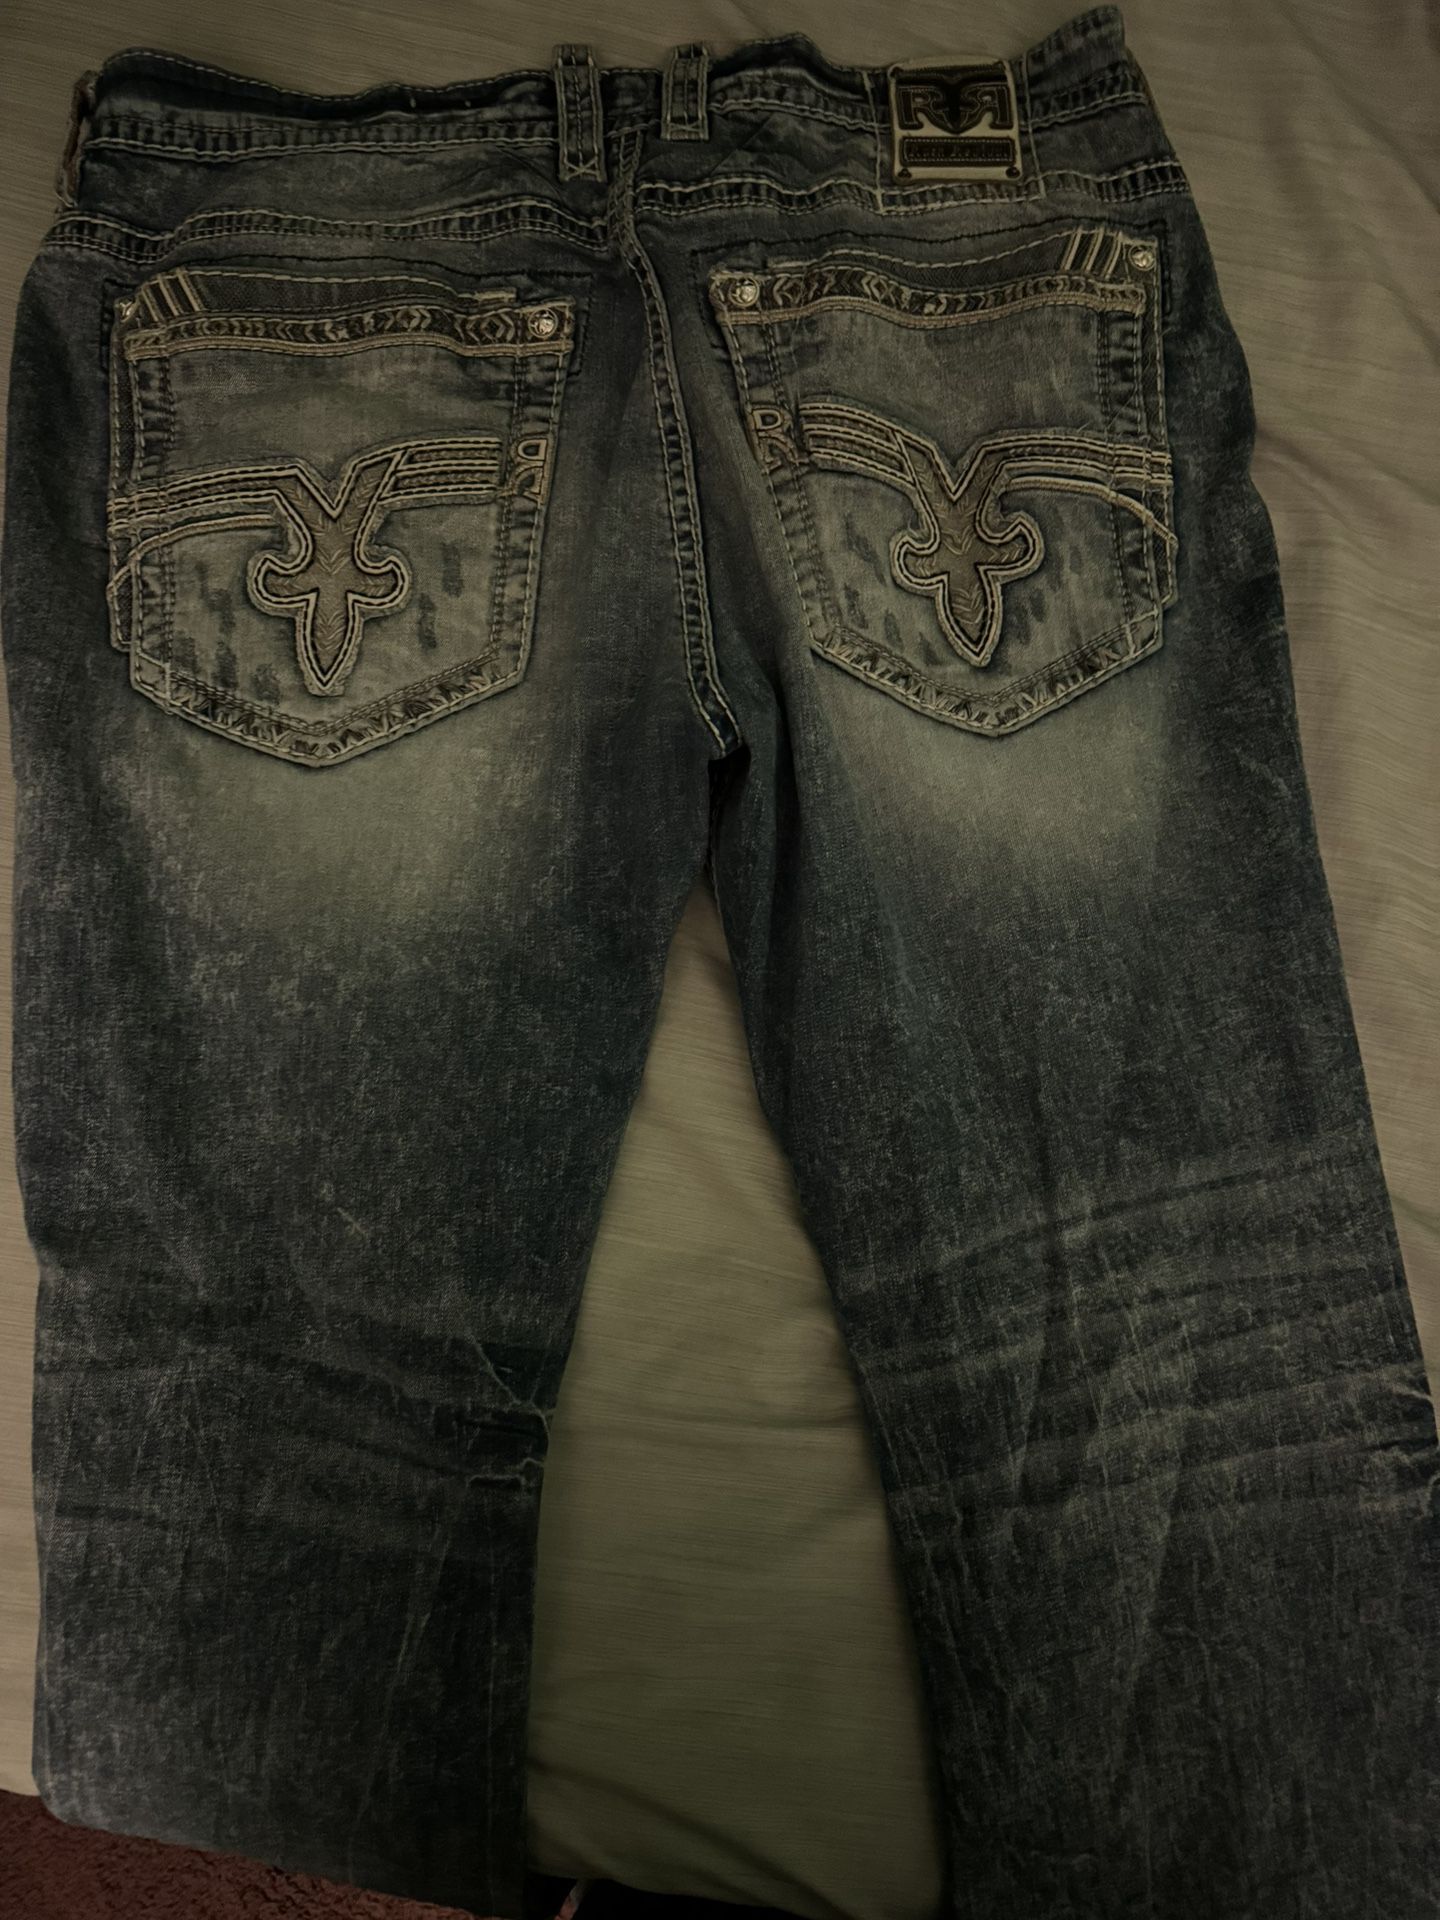 Rock Revival Men’s Jeans size 44